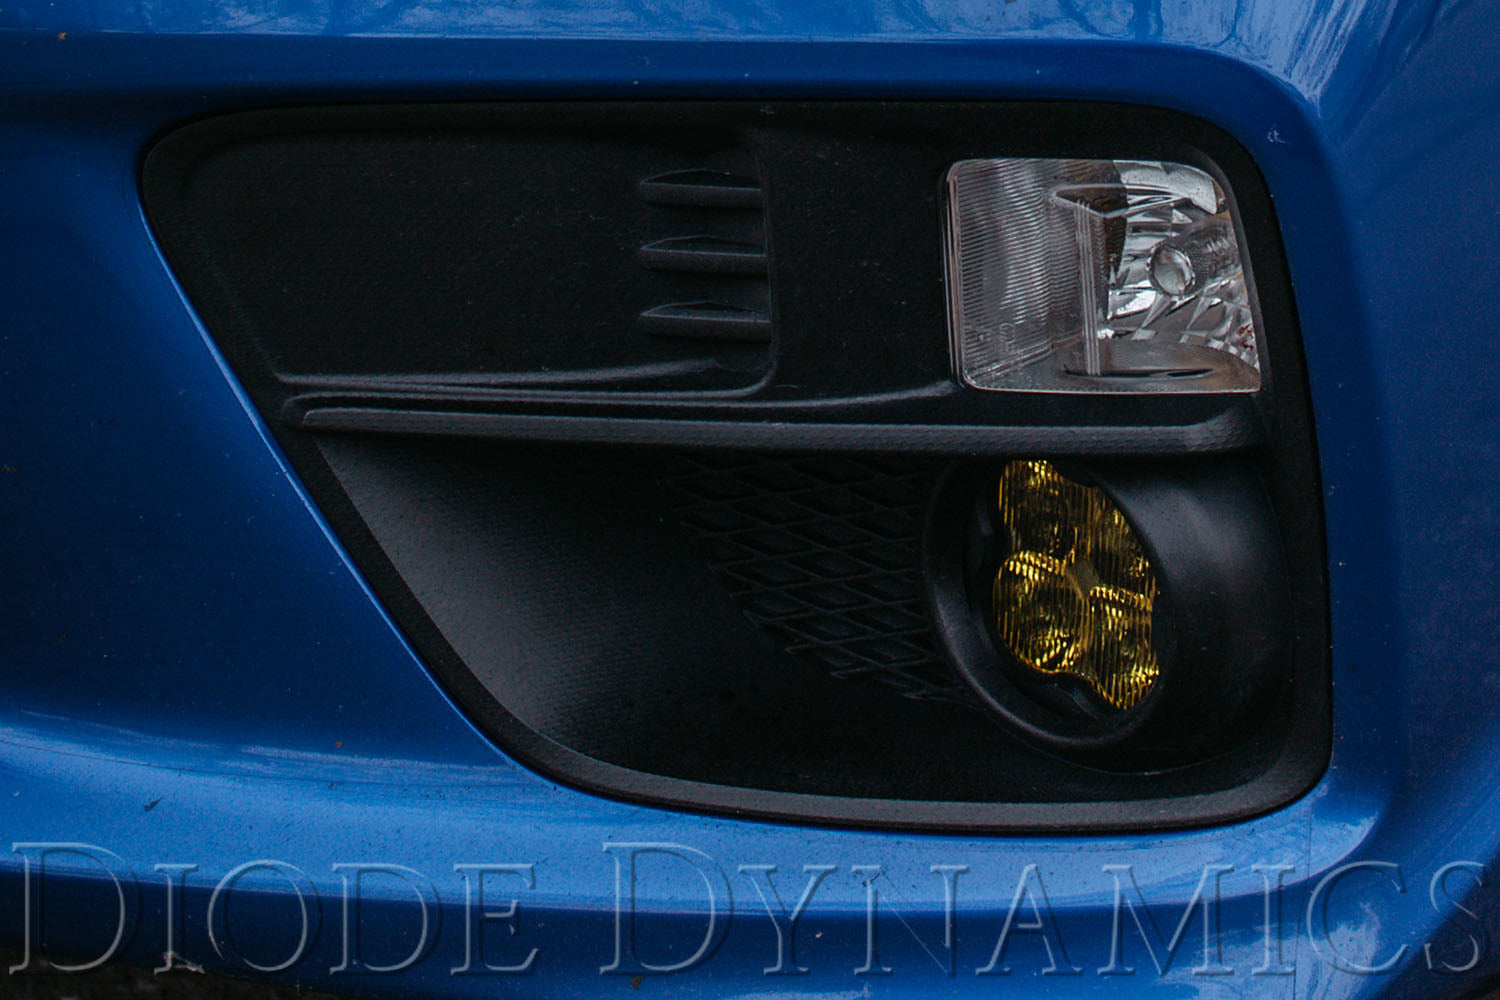 SS3 LED Fog Light Kit for 2013-2017 Subaru BRZ White SAE/DOT Driving Sport Diode Dynamics